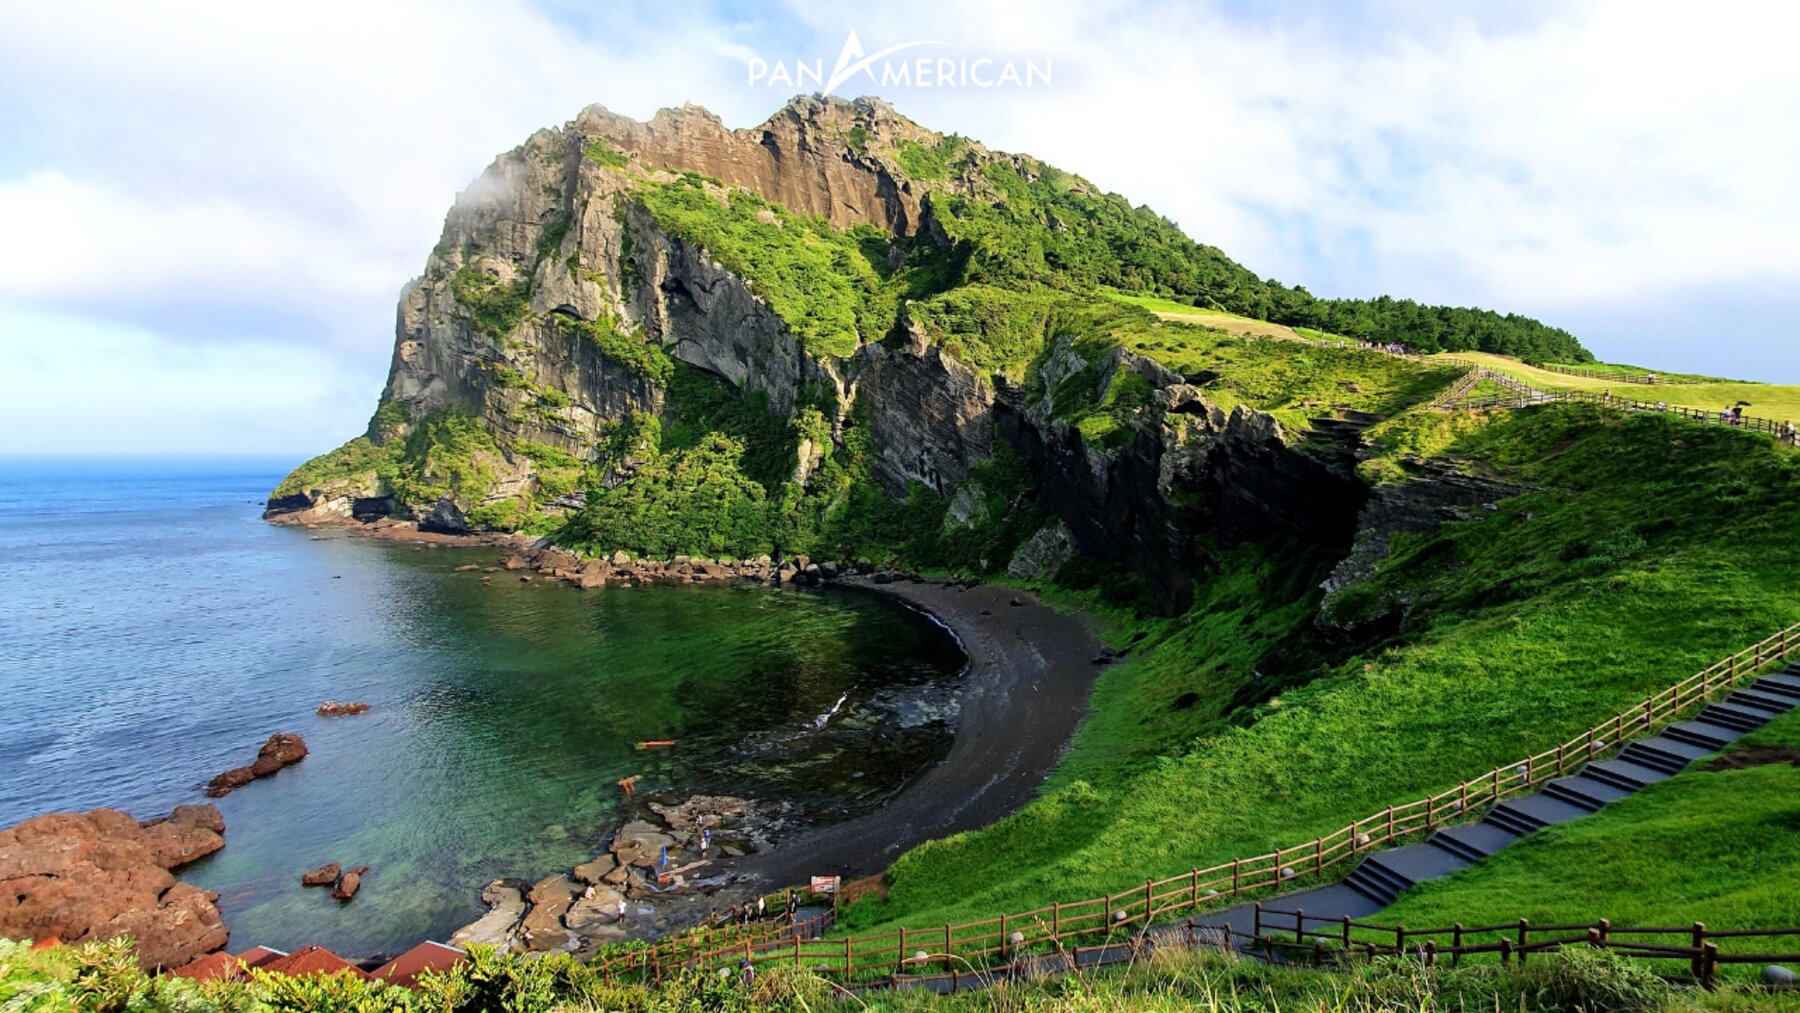 Hệ sinh thái phong phú trên đảo Jeju